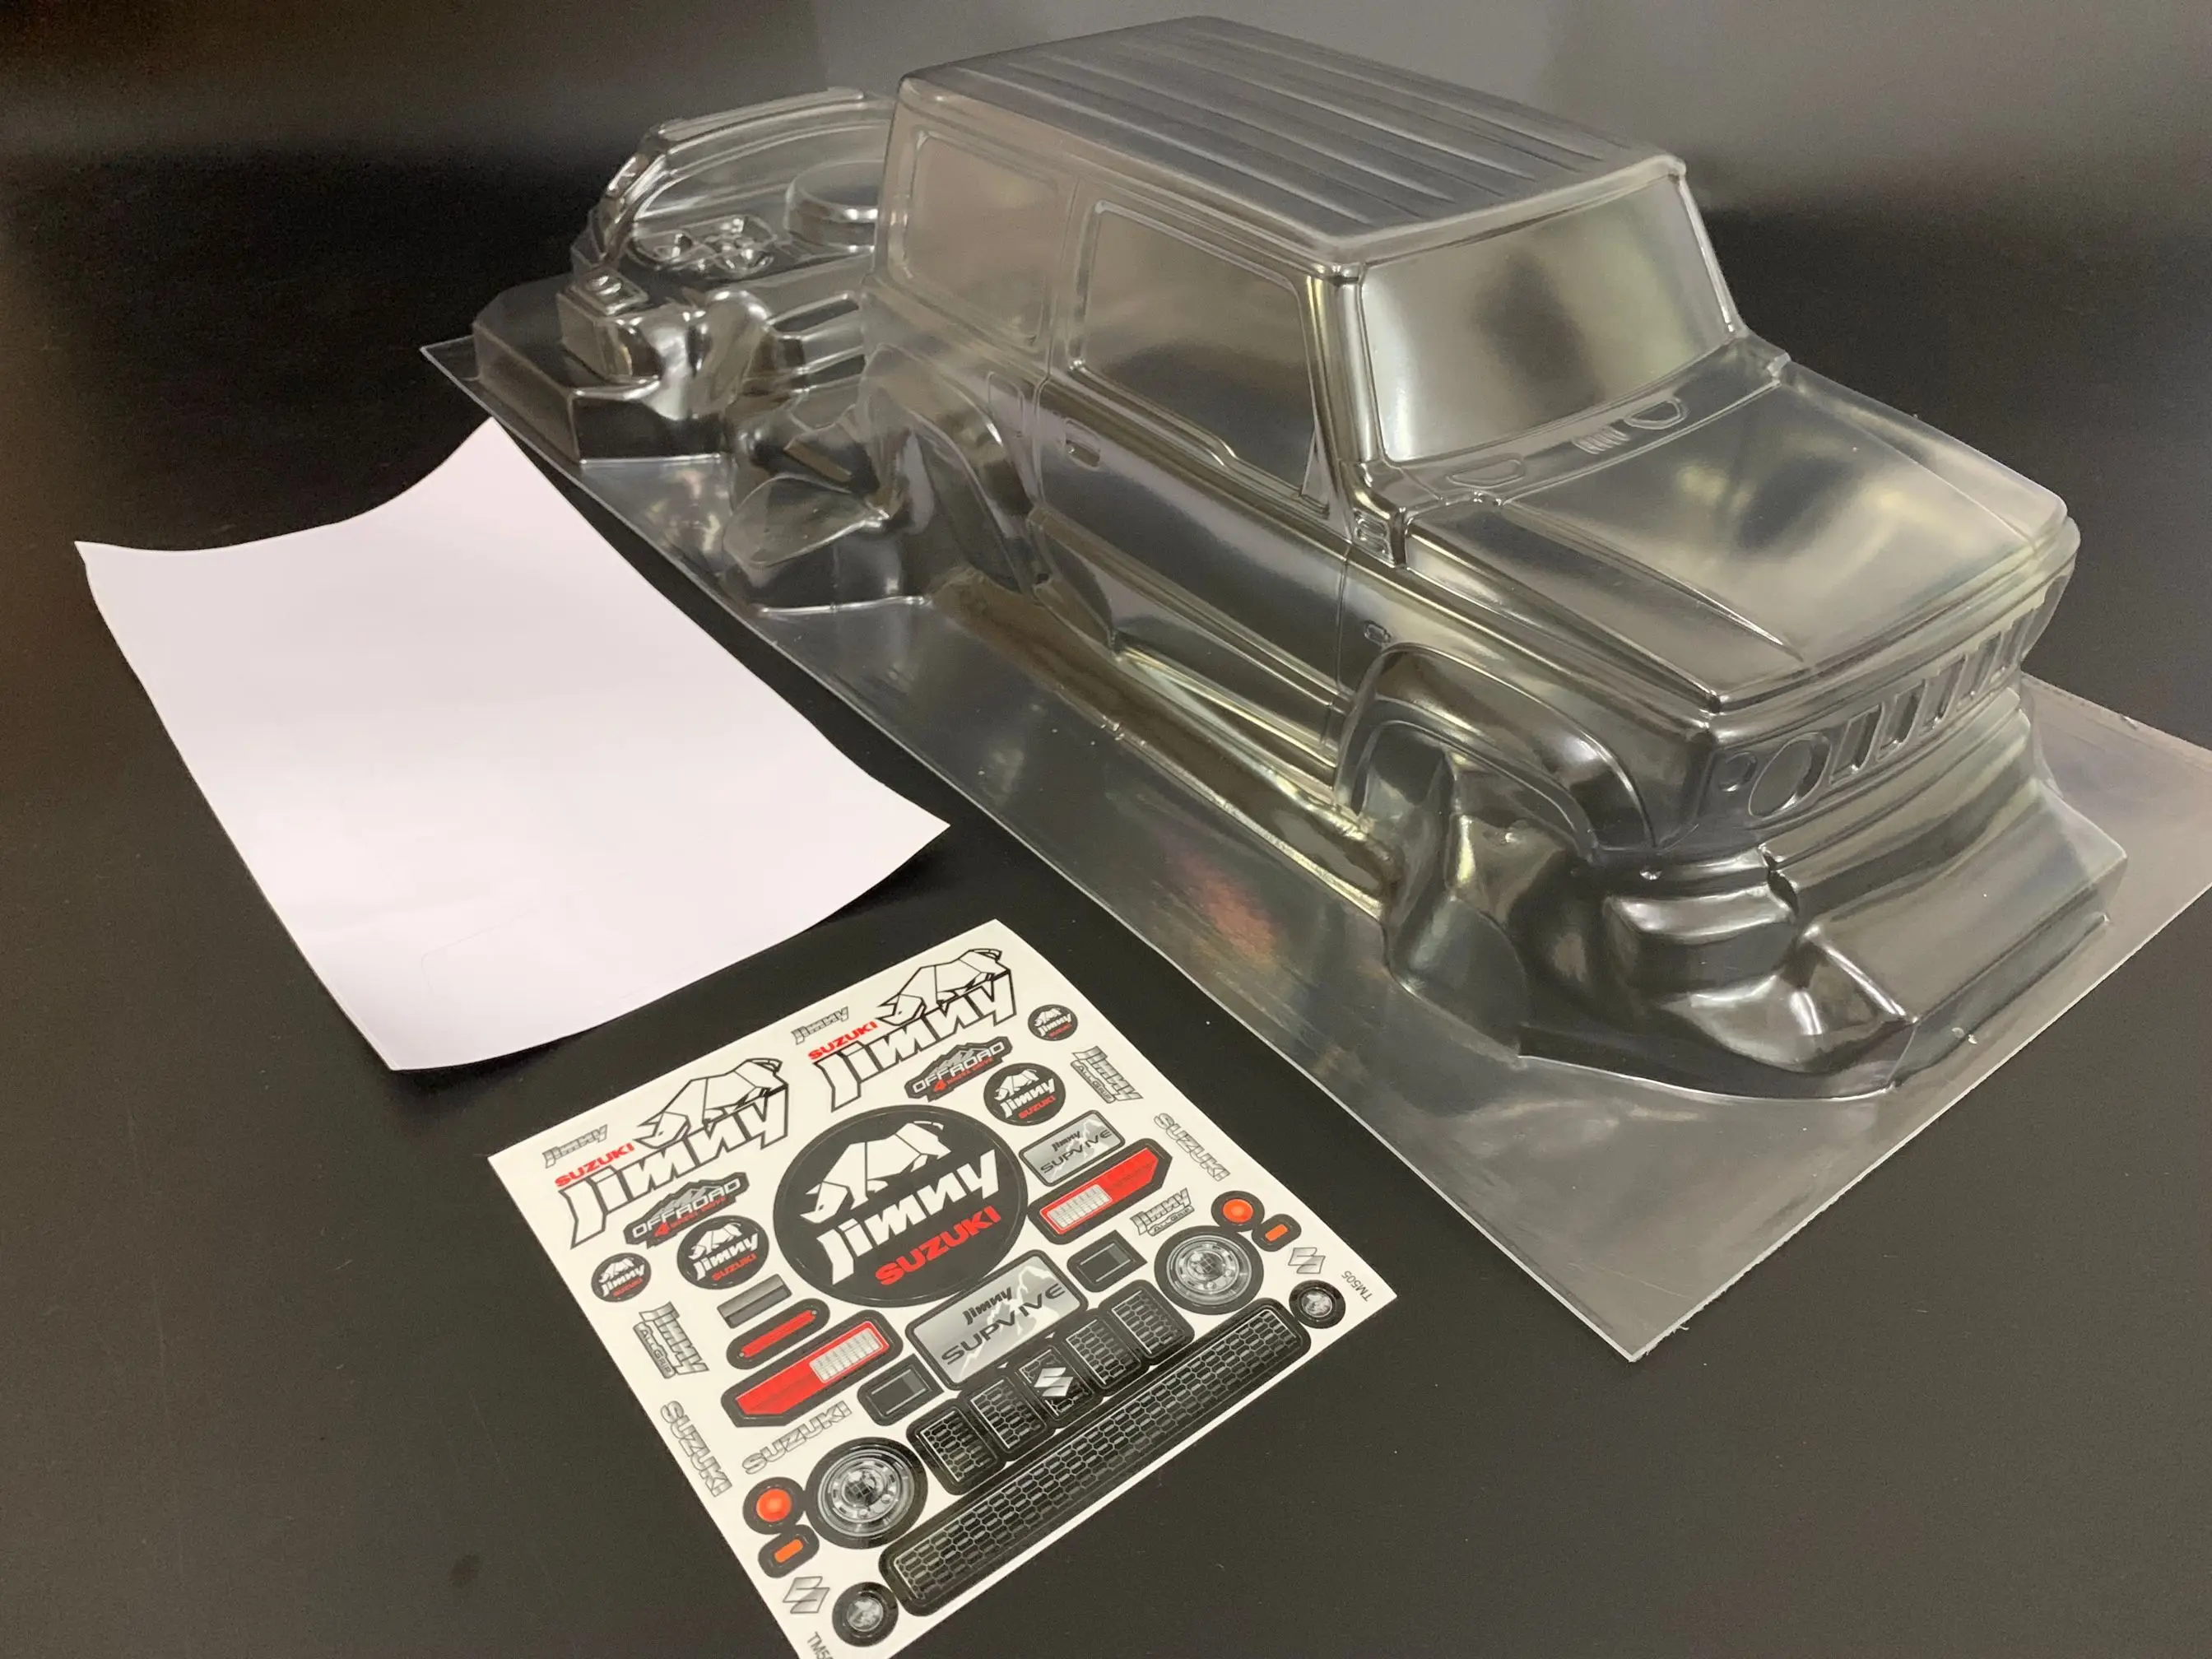 Team C TM505 M автомобильный корпус 1/10 Масштаб Rc Гусеничный Suzuki Jimny игрушки модель прозрачный корпус с наклейкой 225 мм Колесная база - Цвет: Белый